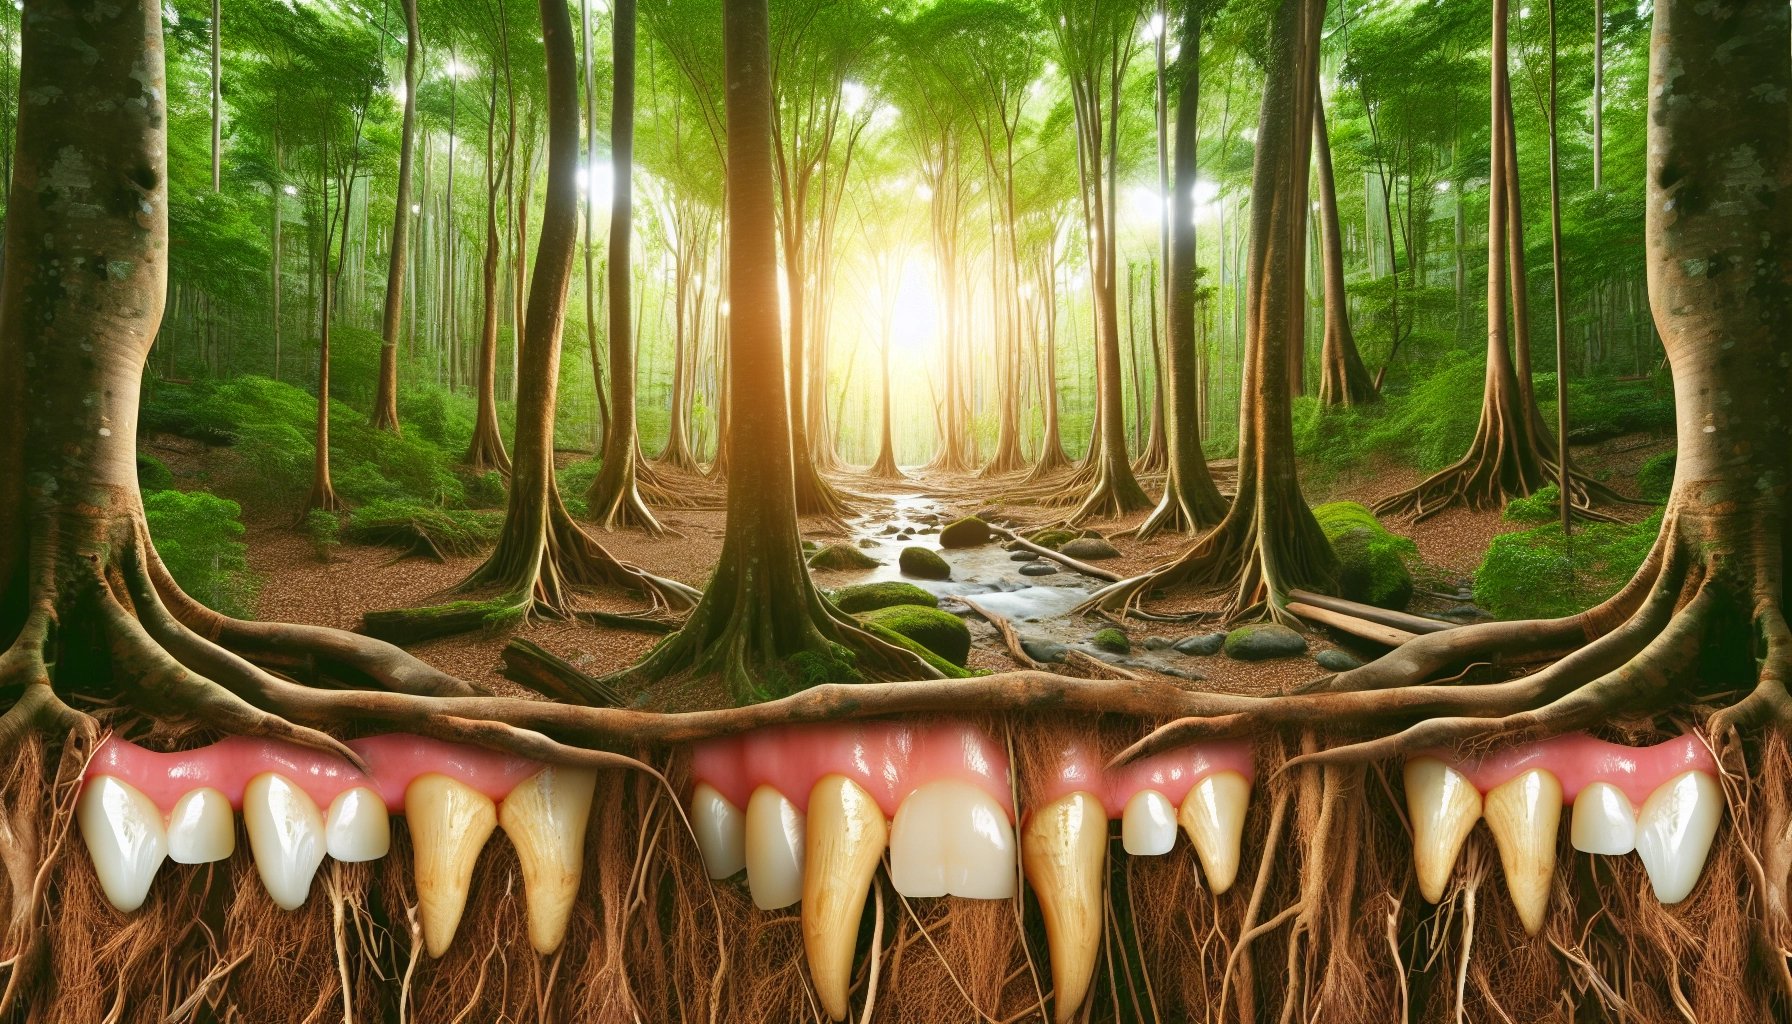 simbolismo y significado de sonar con dientes en la naturaleza.webp